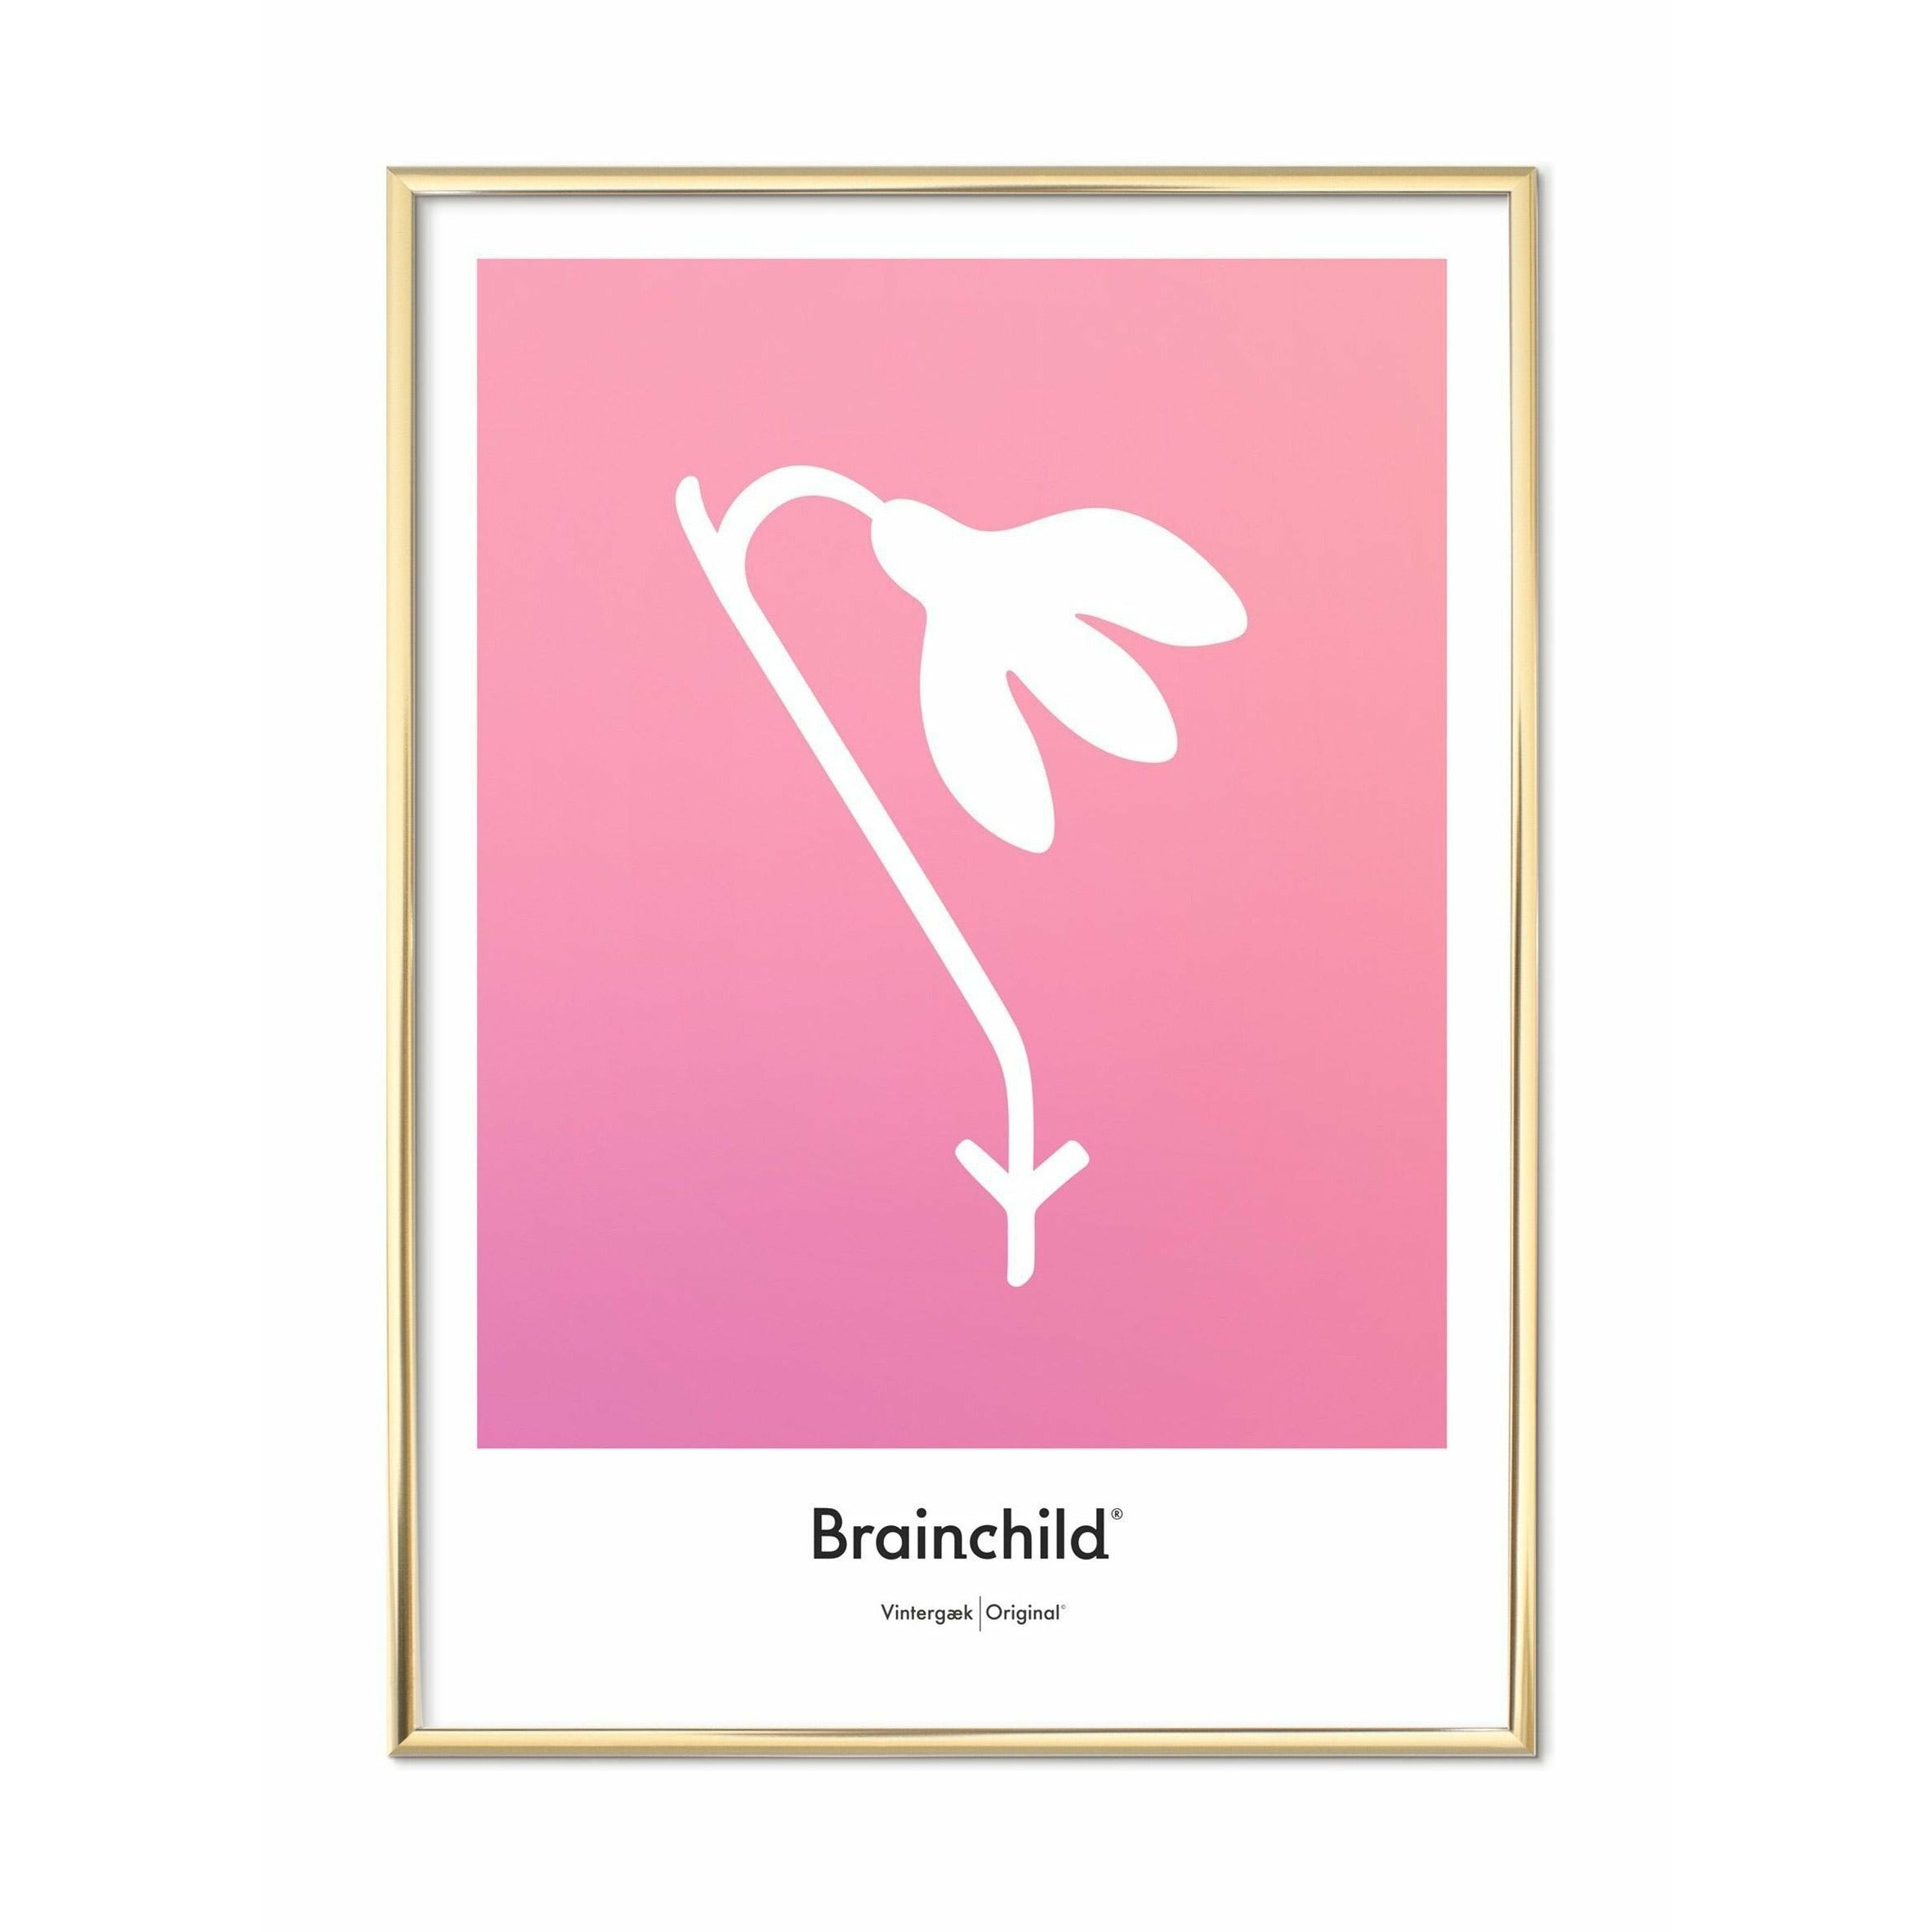 Brainchild Snowdrop Design Icon Poster, Brass Colored Frame 30 X40 Cm, Pink